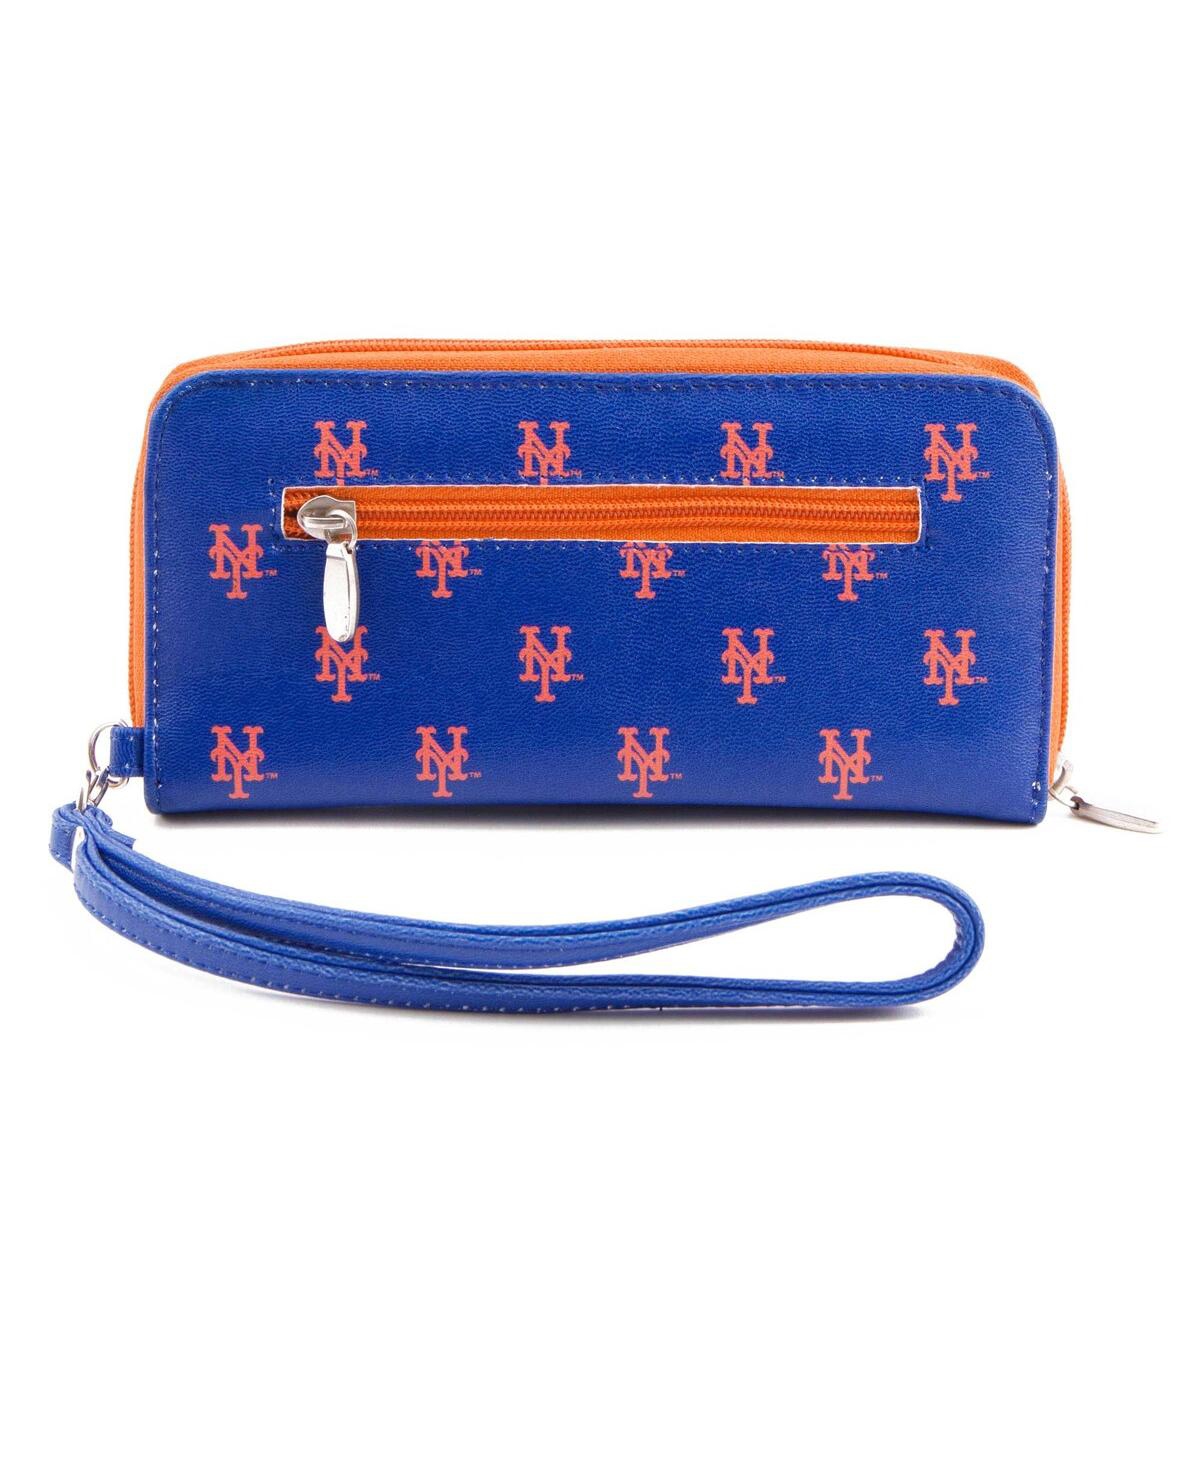 Women's New York Mets Zip-Around Wristlet Wallet - Blue